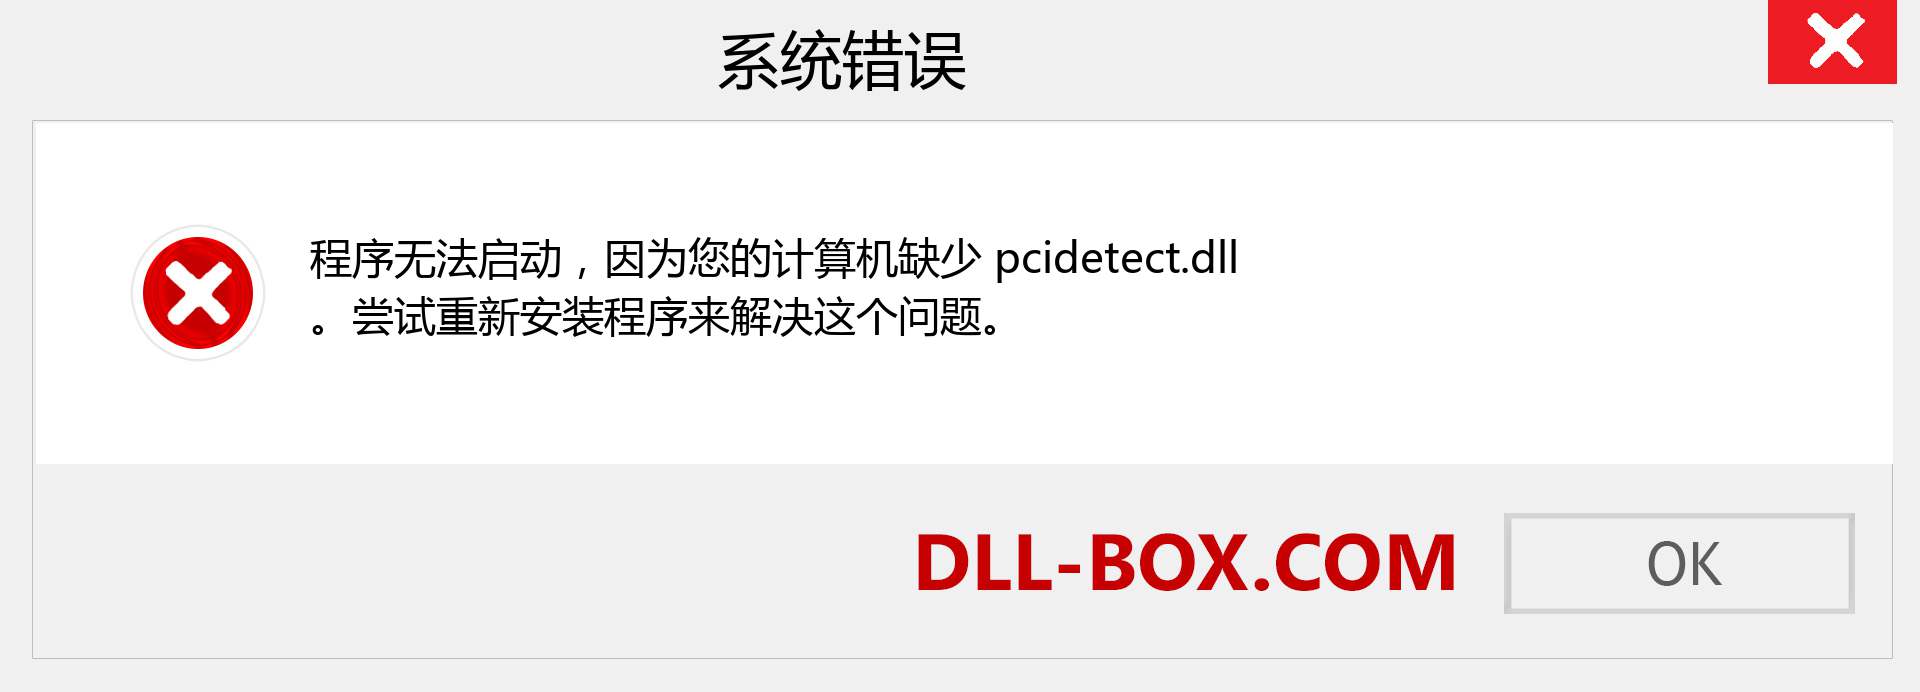 pcidetect.dll 文件丢失？。 适用于 Windows 7、8、10 的下载 - 修复 Windows、照片、图像上的 pcidetect dll 丢失错误